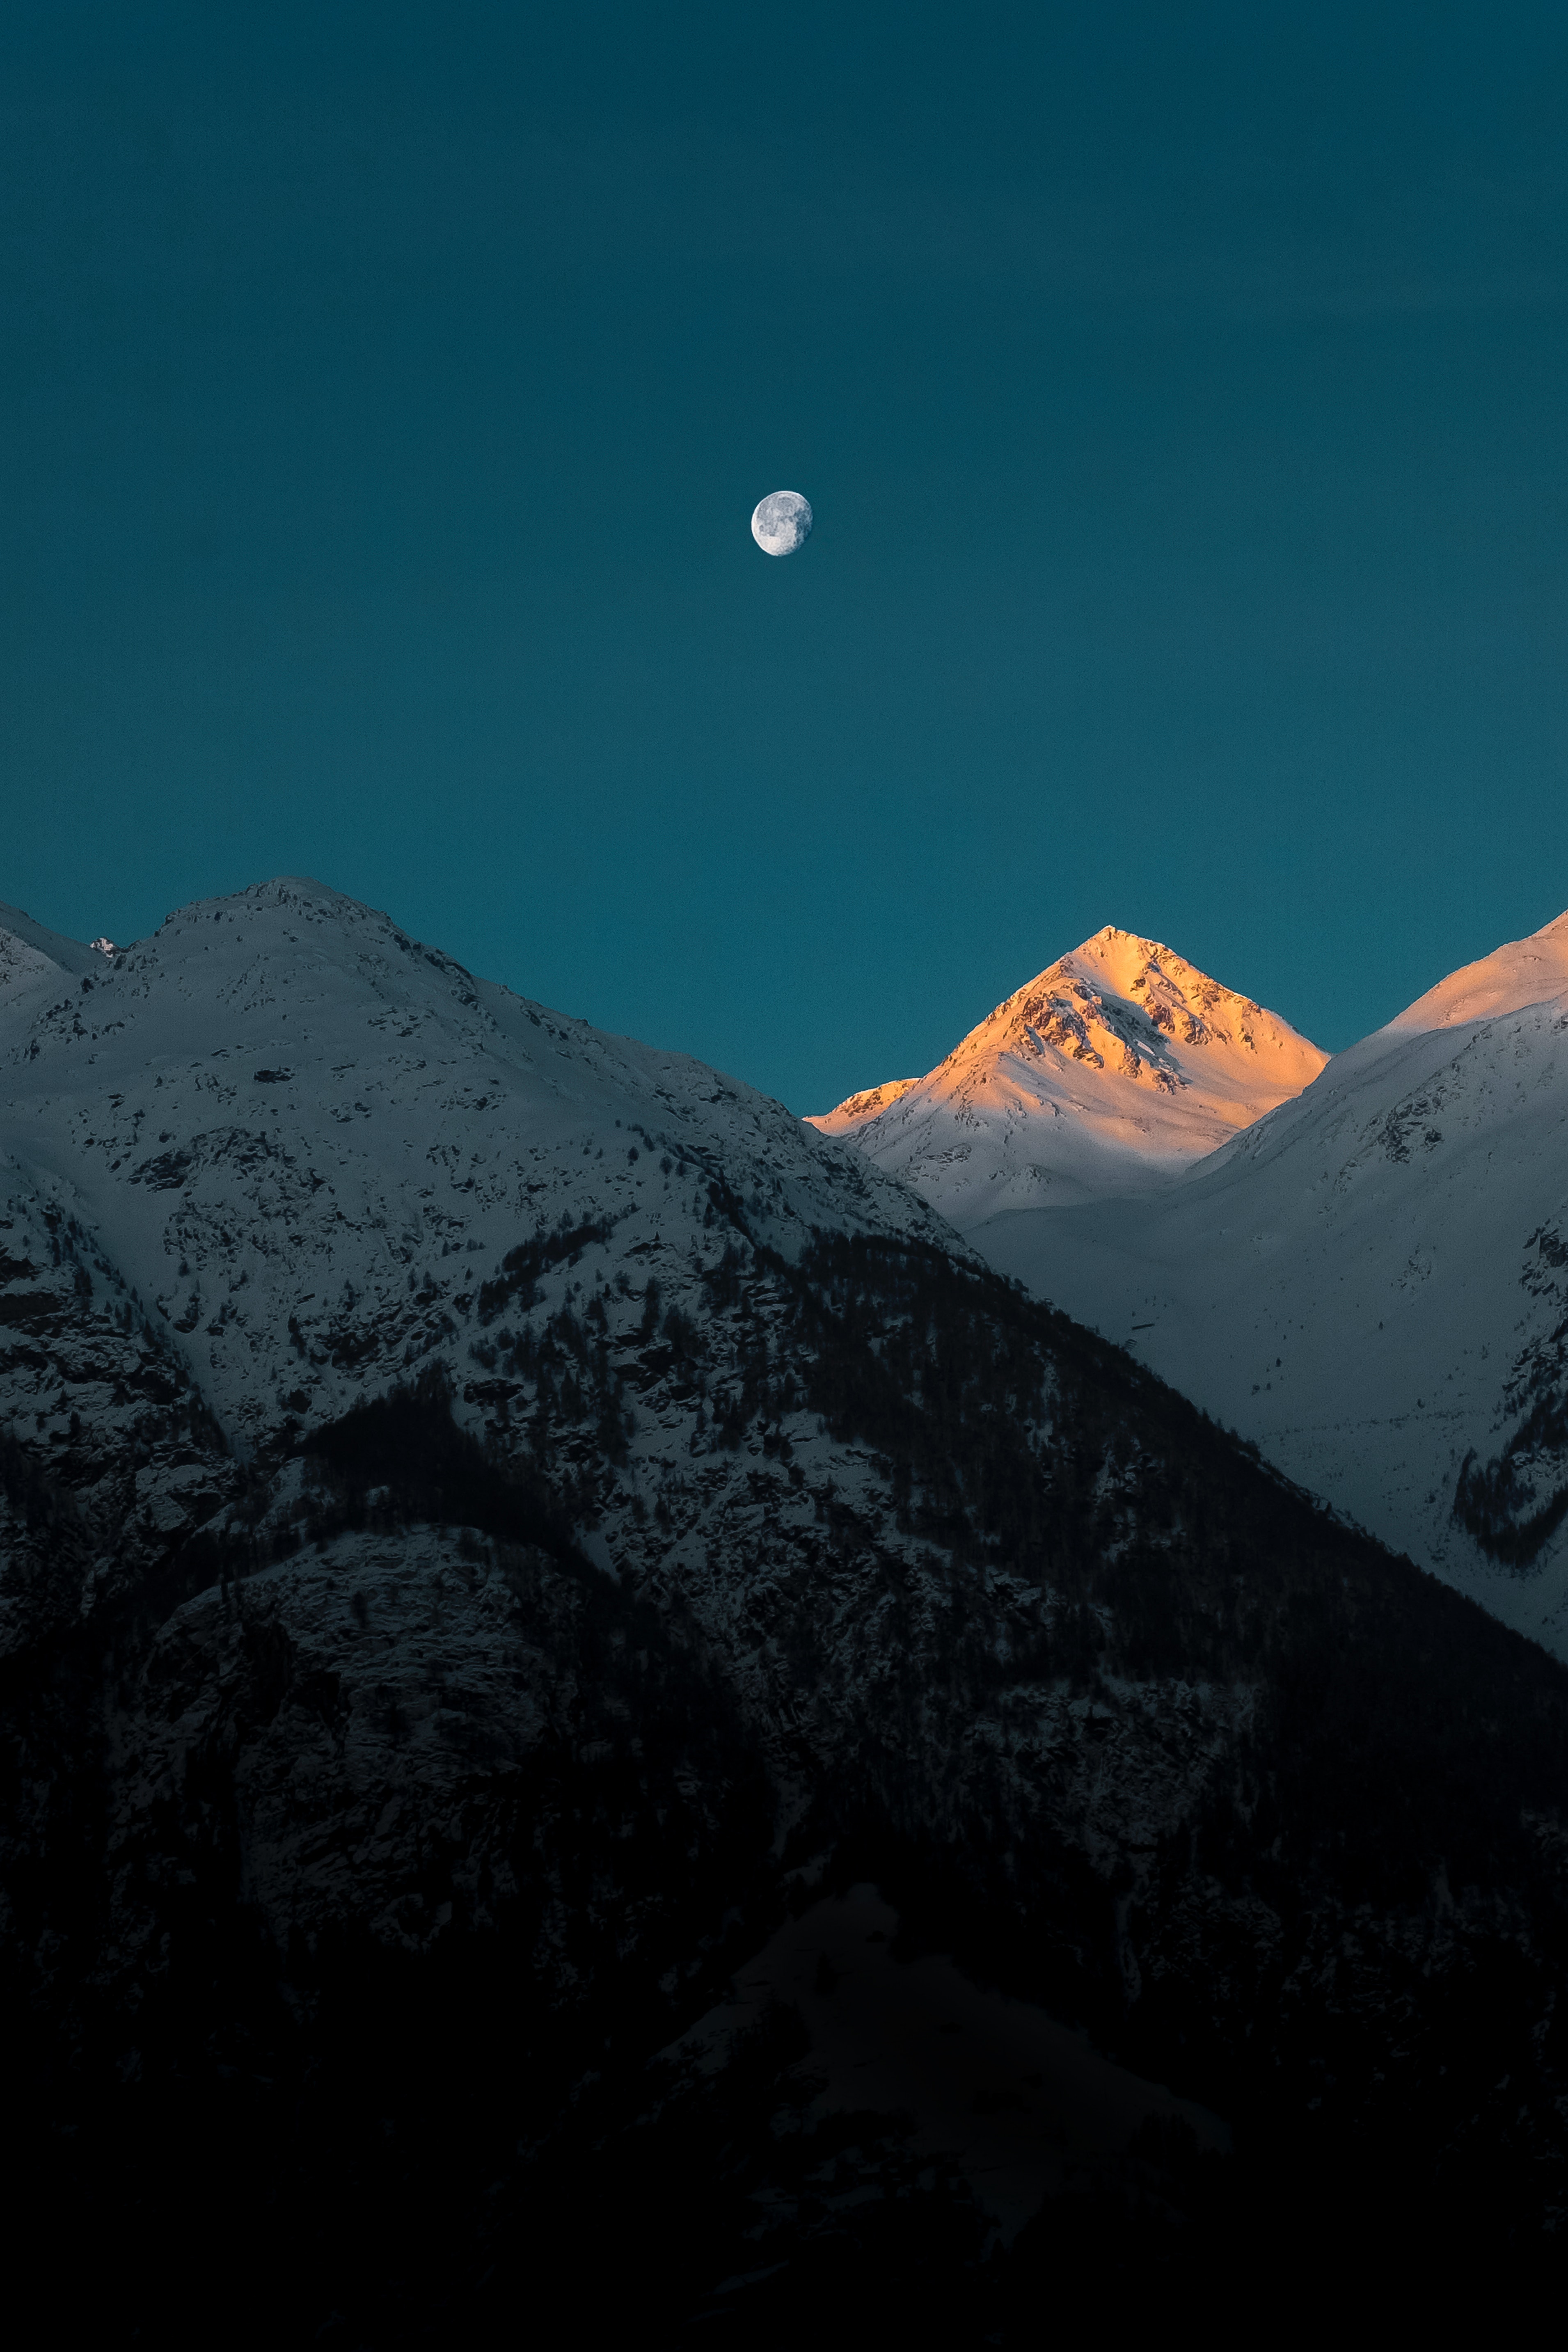 72013 免費下載壁紙 性质, 山, 黄昏, 月球, 顶点, 雪覆盖, 白雪覆盖 屏保和圖片